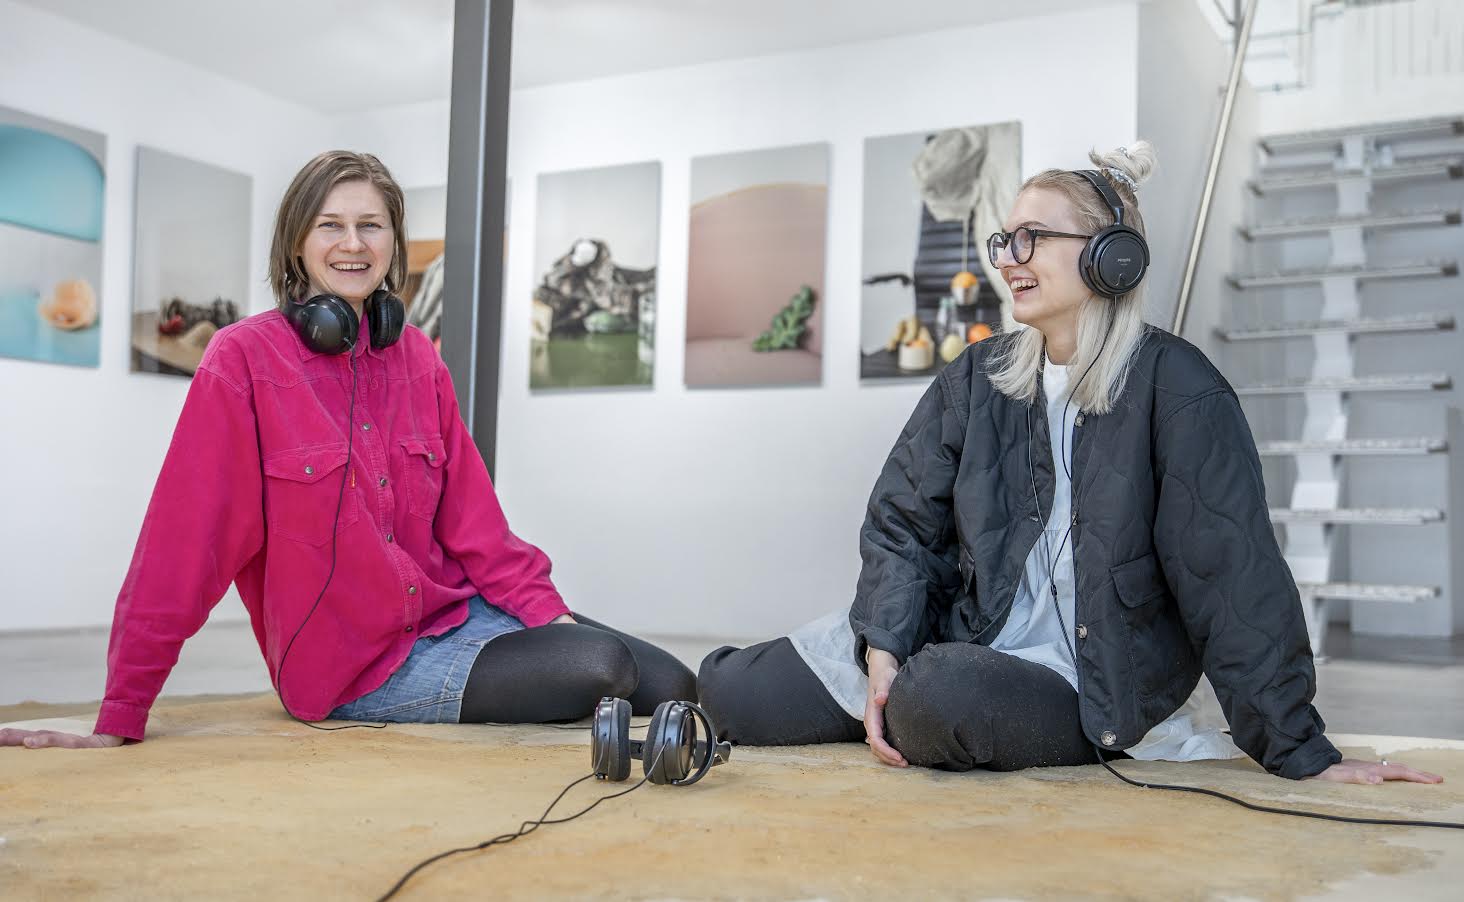 Galerist Stella Mõttus (paremalt) ja kunstnik Laura Kuusk Kanal galeriis niinimetatud limamattidel istumas. Fotod: AIGAR NAGEL